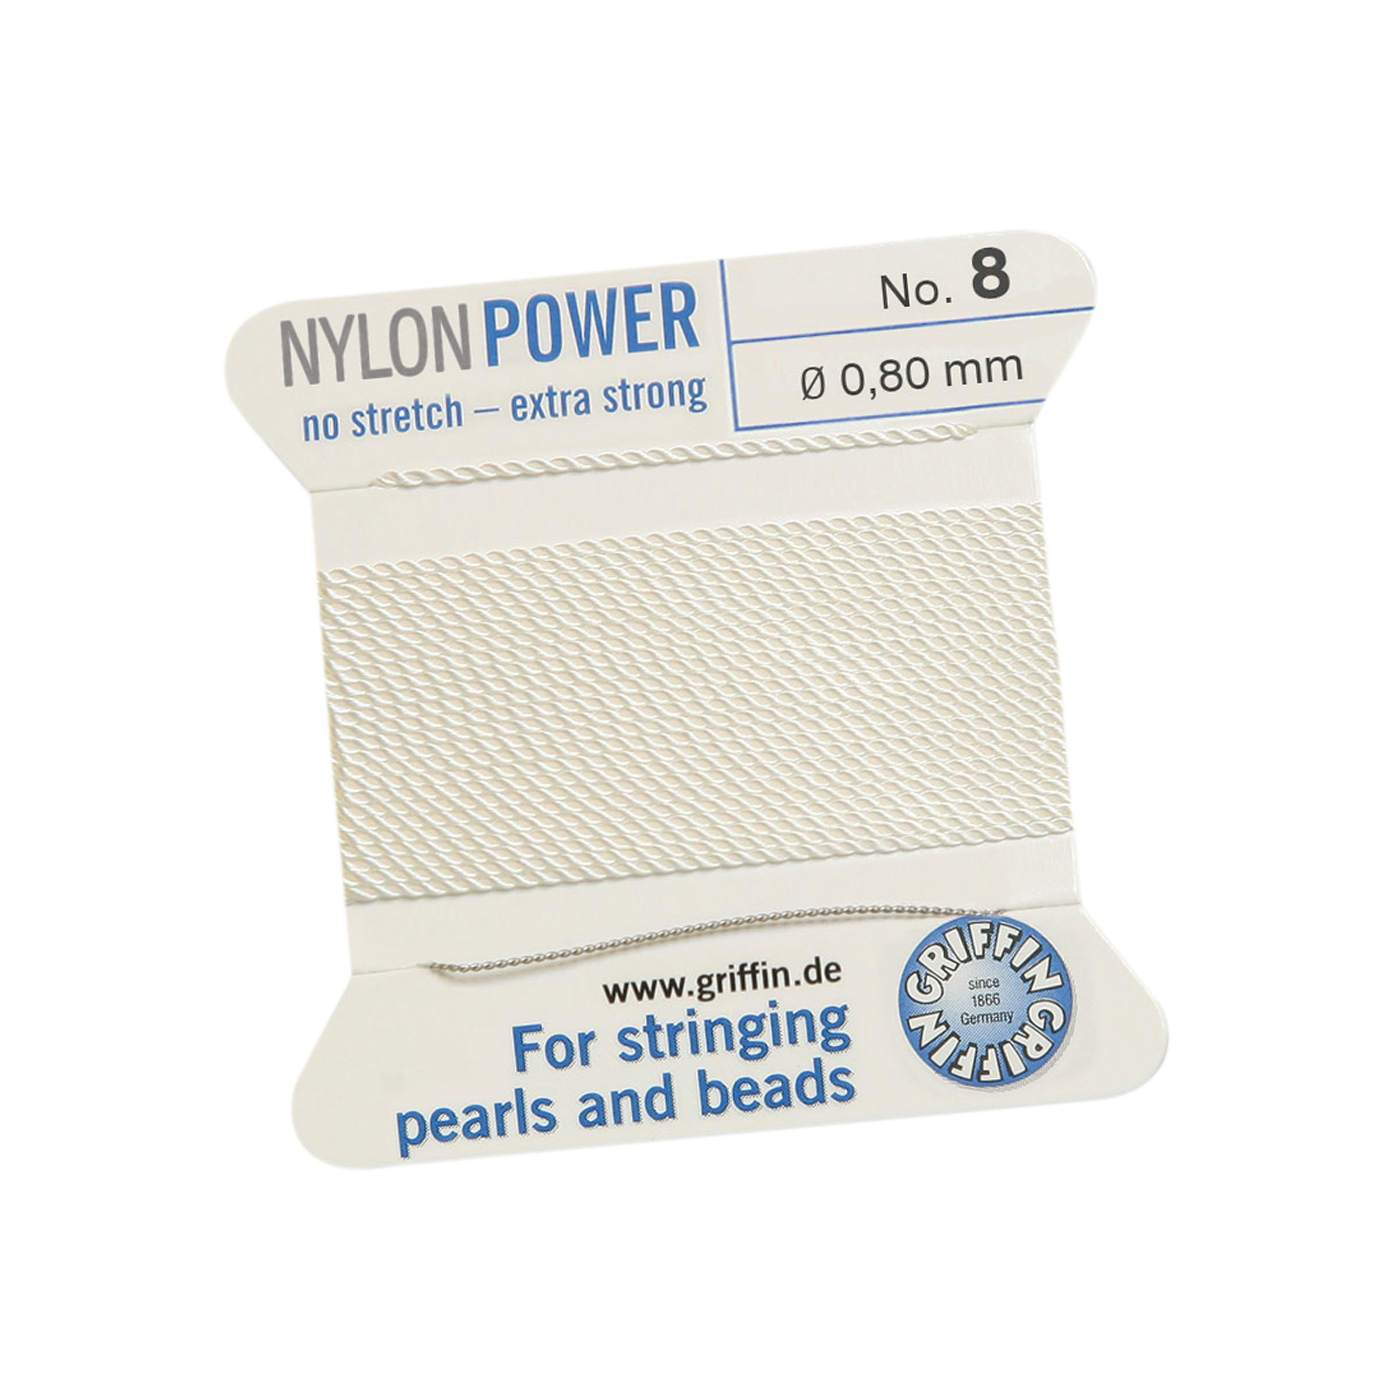 Bead Cord NylonPower, White, No. 8 - 2 m